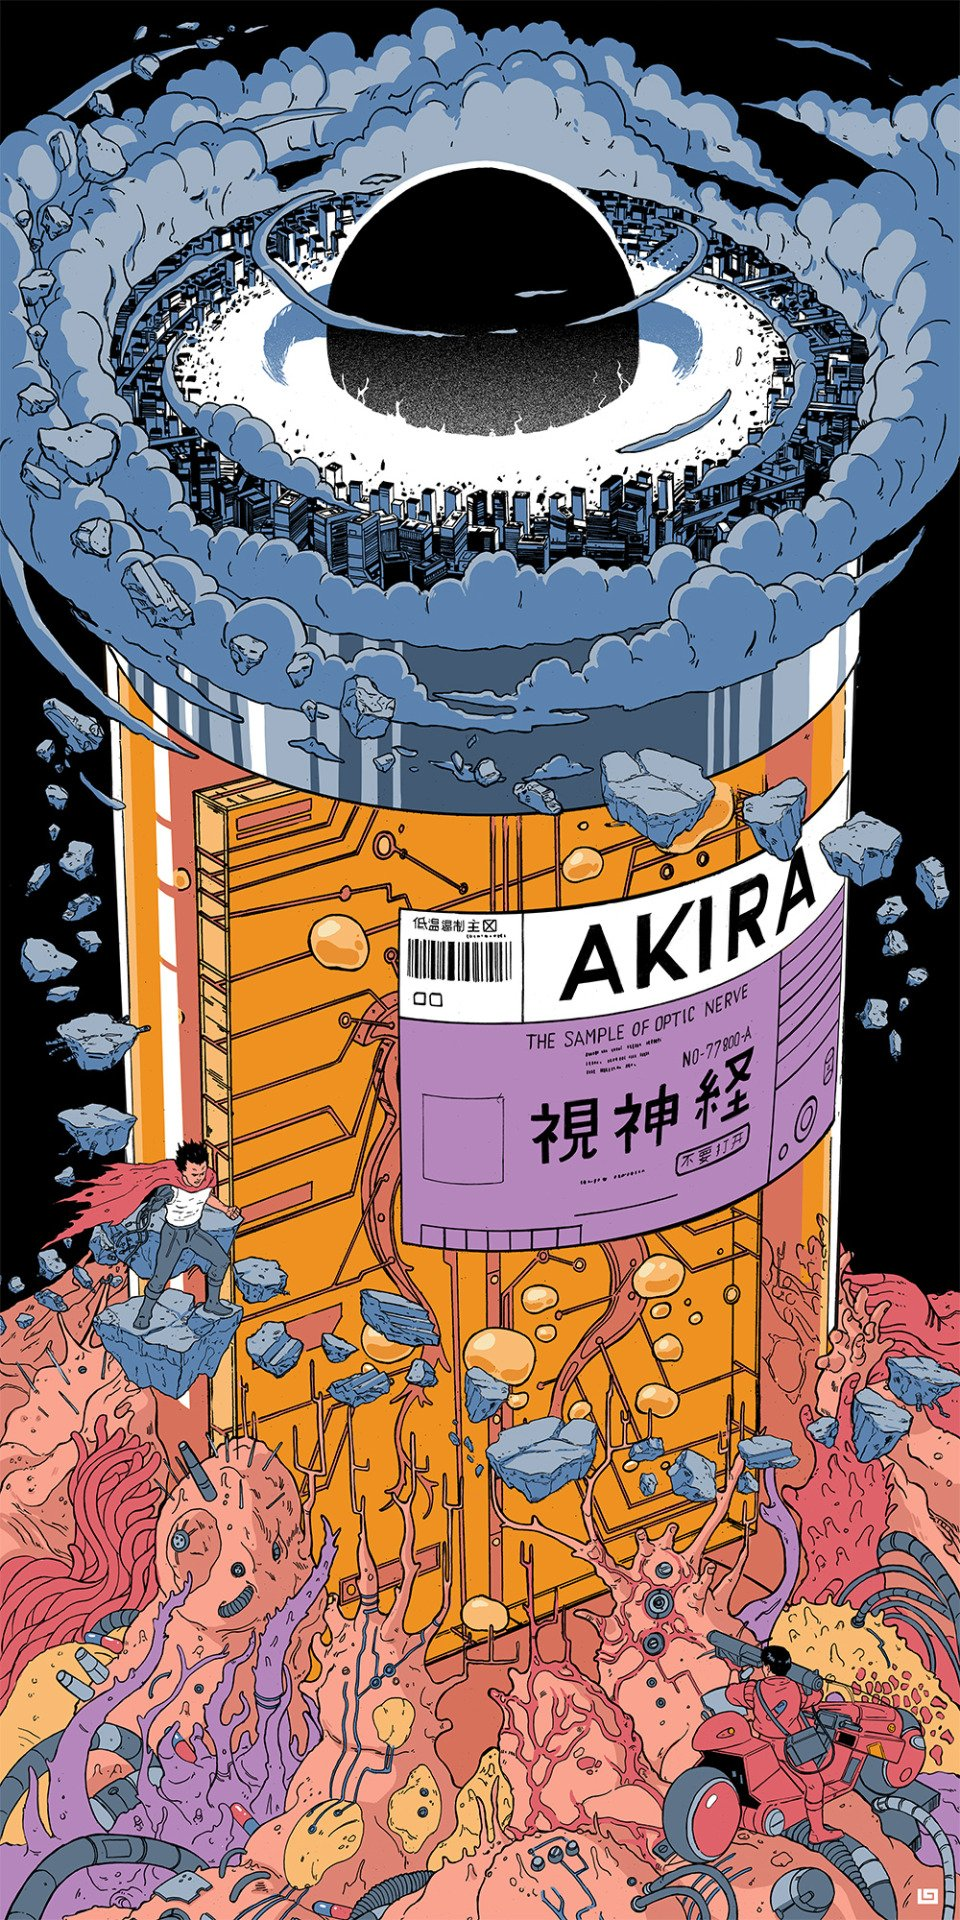 加藤 テツナオ（ブレラン） on Twitter. Akira anime, Cyberpunk art, Anime wallpaper